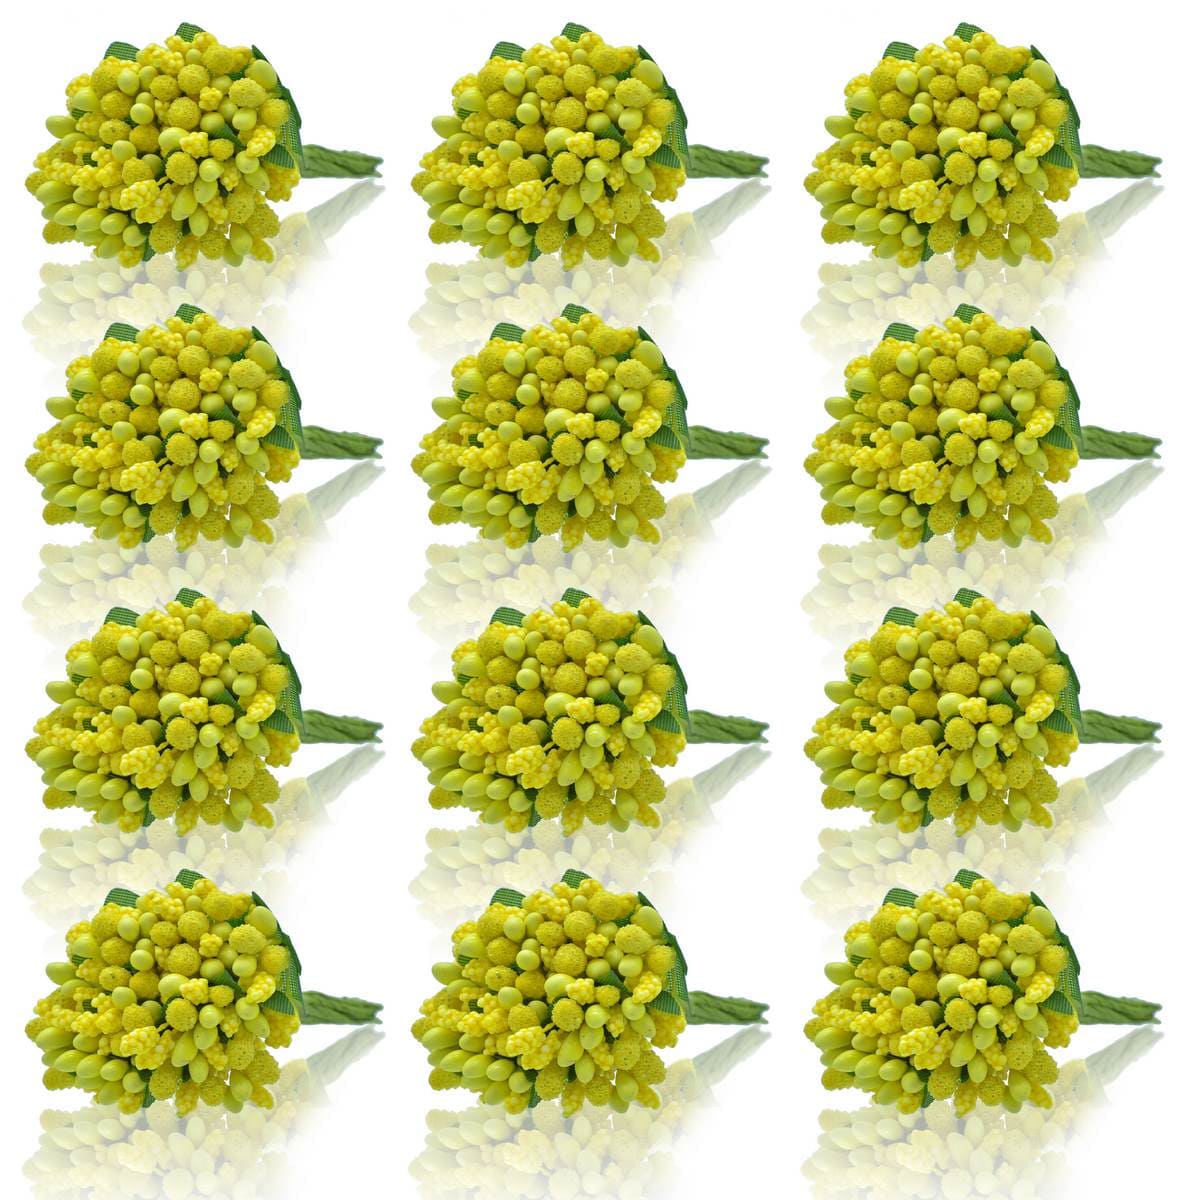 jags-mumbai Artificial Flower Artificial Flower pollens 144 Pics Yellow